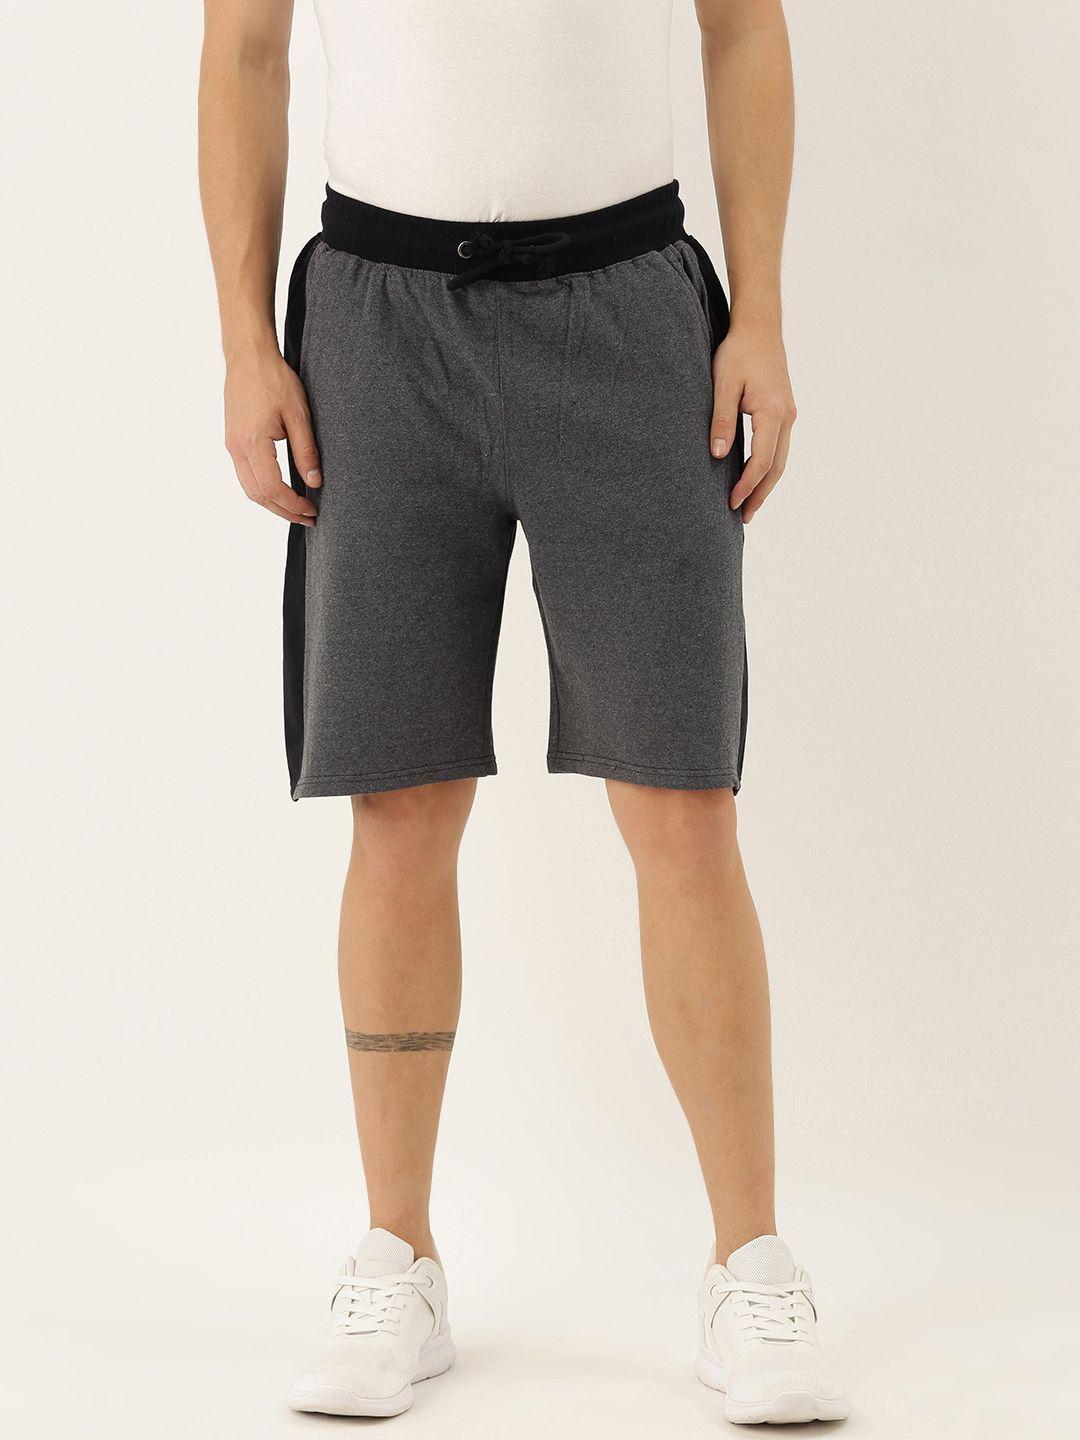 arise men grey melange solid regular fit regular shorts with side block panel detailing